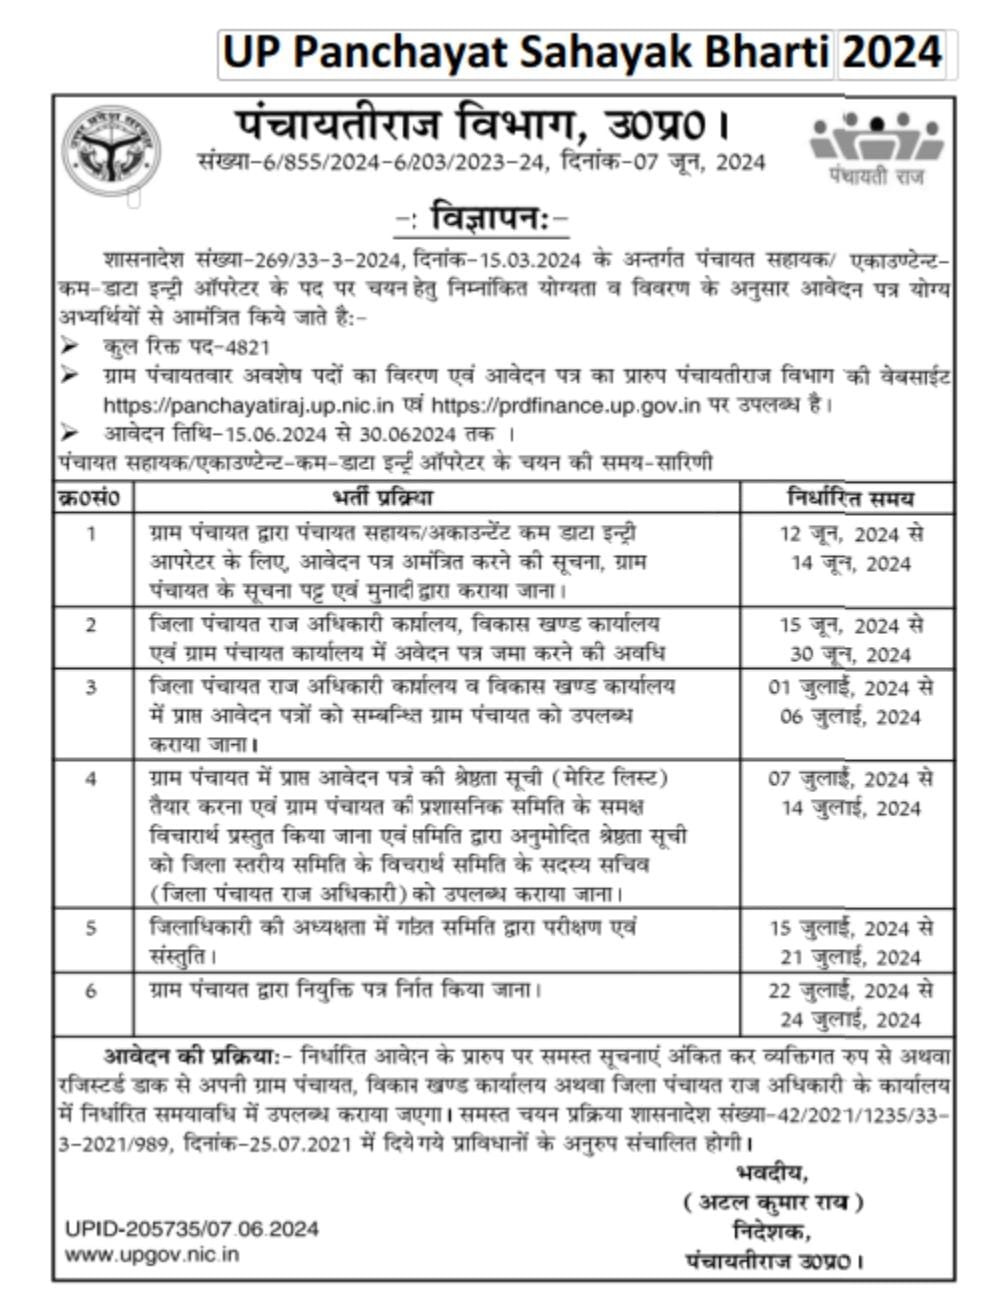 UP Panchayat Sahayak Recruitment 2024